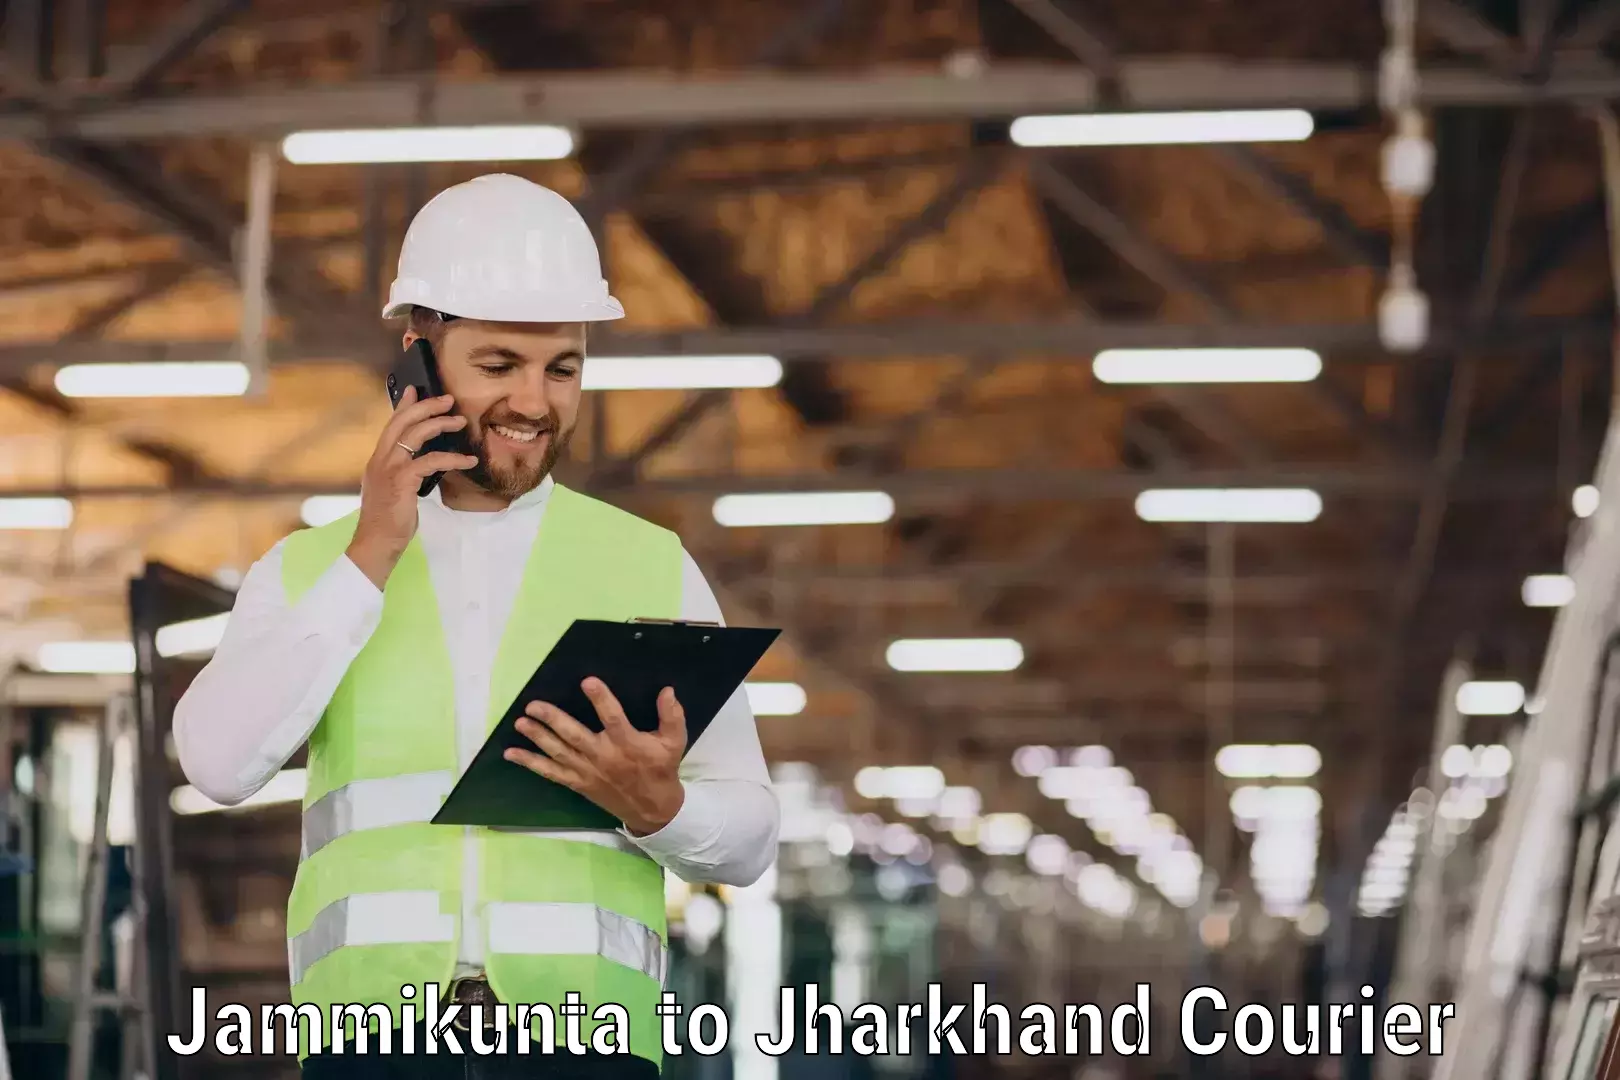 Multi-service courier options Jammikunta to Chakradharpur